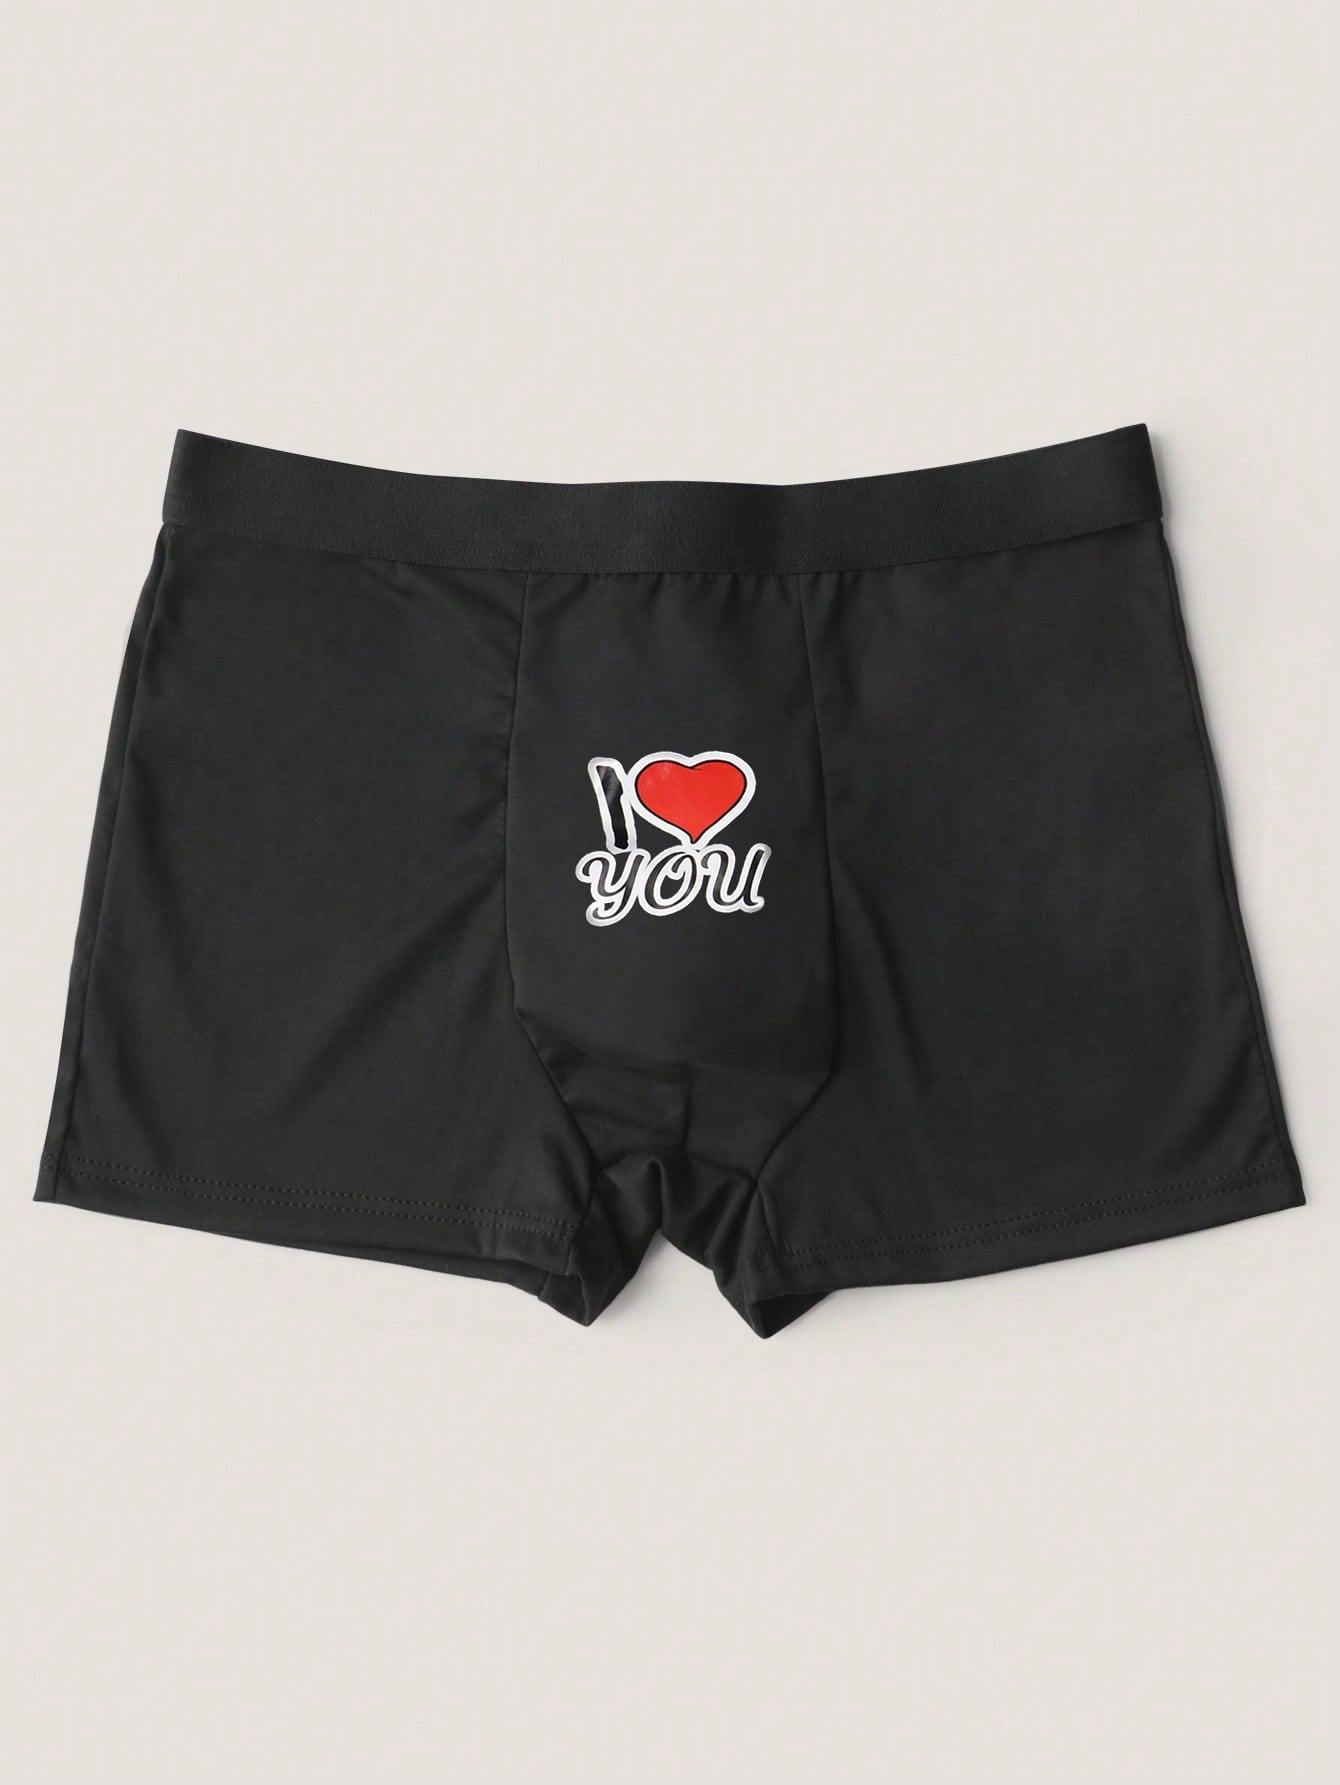 Мужские шорты с рисунком, черный мужские сексуальные прозрачные боксеры одежда для ношения ультратонкие прозрачные сетчатые дышащие мужские трусы мужские шорты боксеры